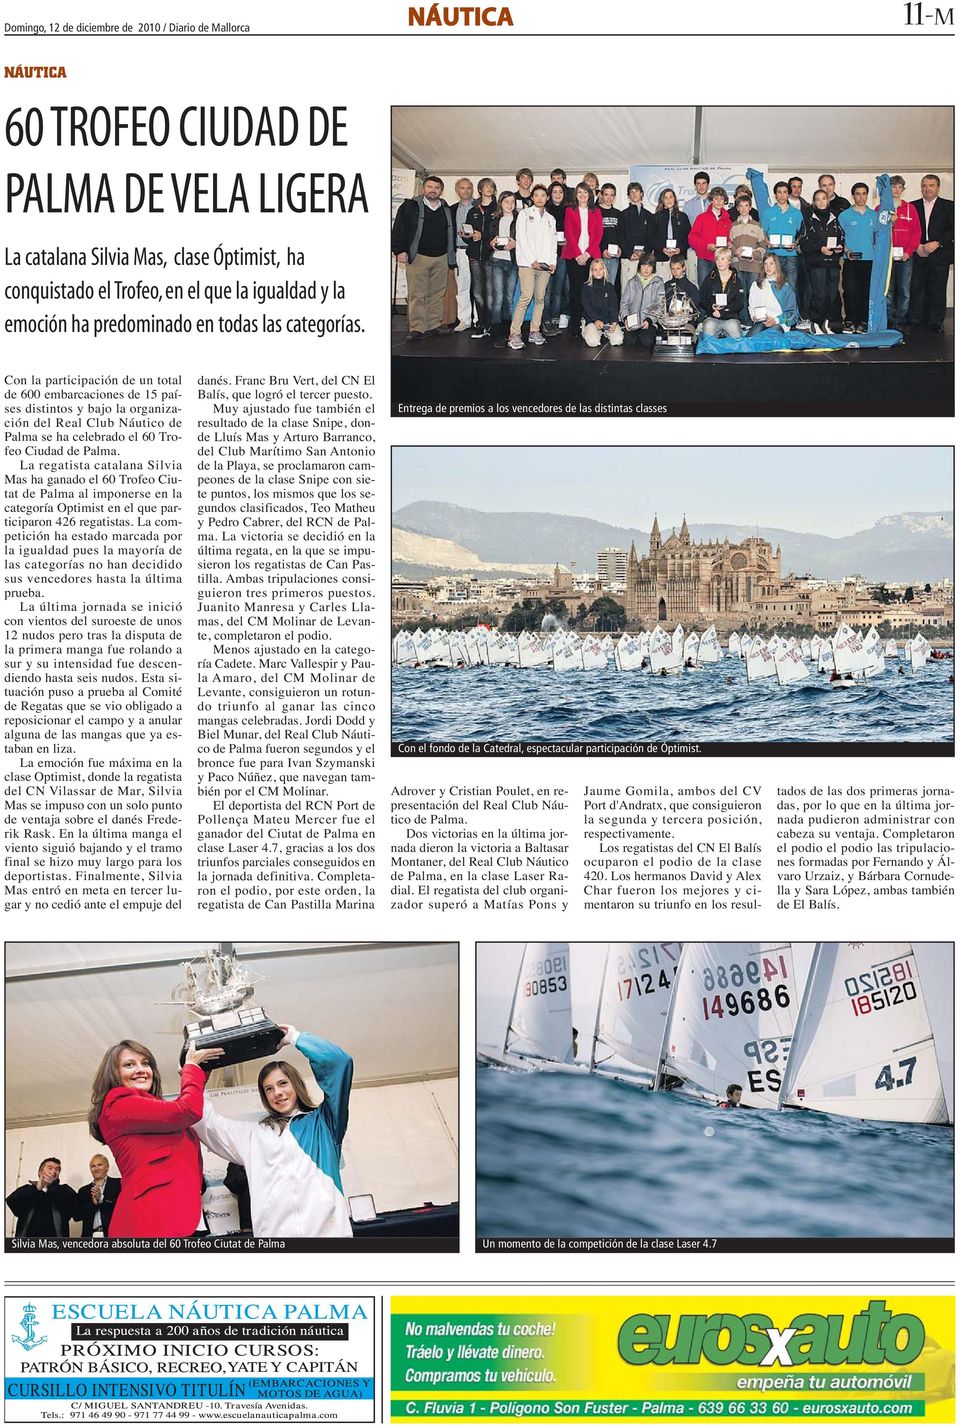 Con la participación de un total de 600 embarcaciones de 15 países distintos y bajo la organización del Real Club Náutico de Palma se ha celebrado el 60 Trofeo Ciudad de Palma.